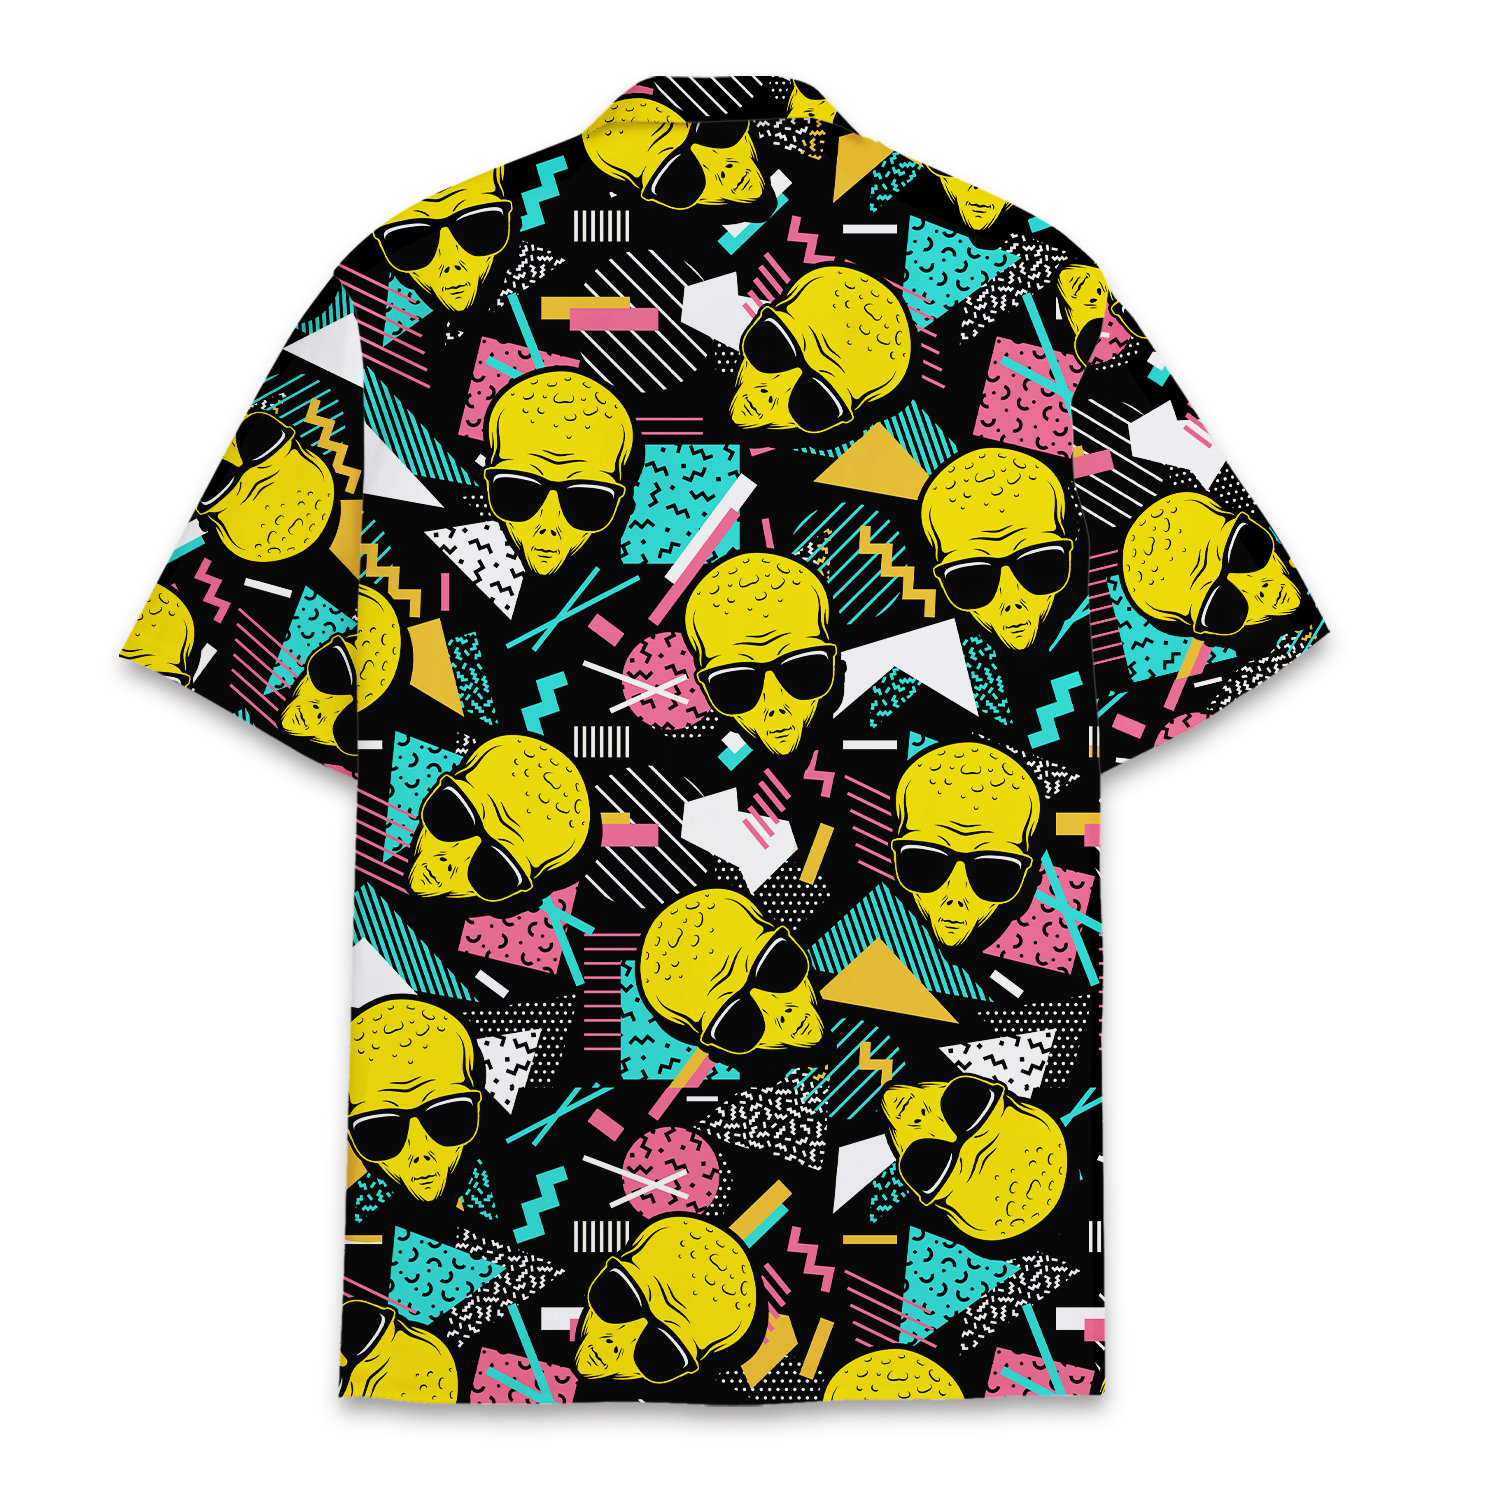 Retro Alien Hawaiian Shirt for Men Women, Alien Shirt Summer Beach Aloha Outfit